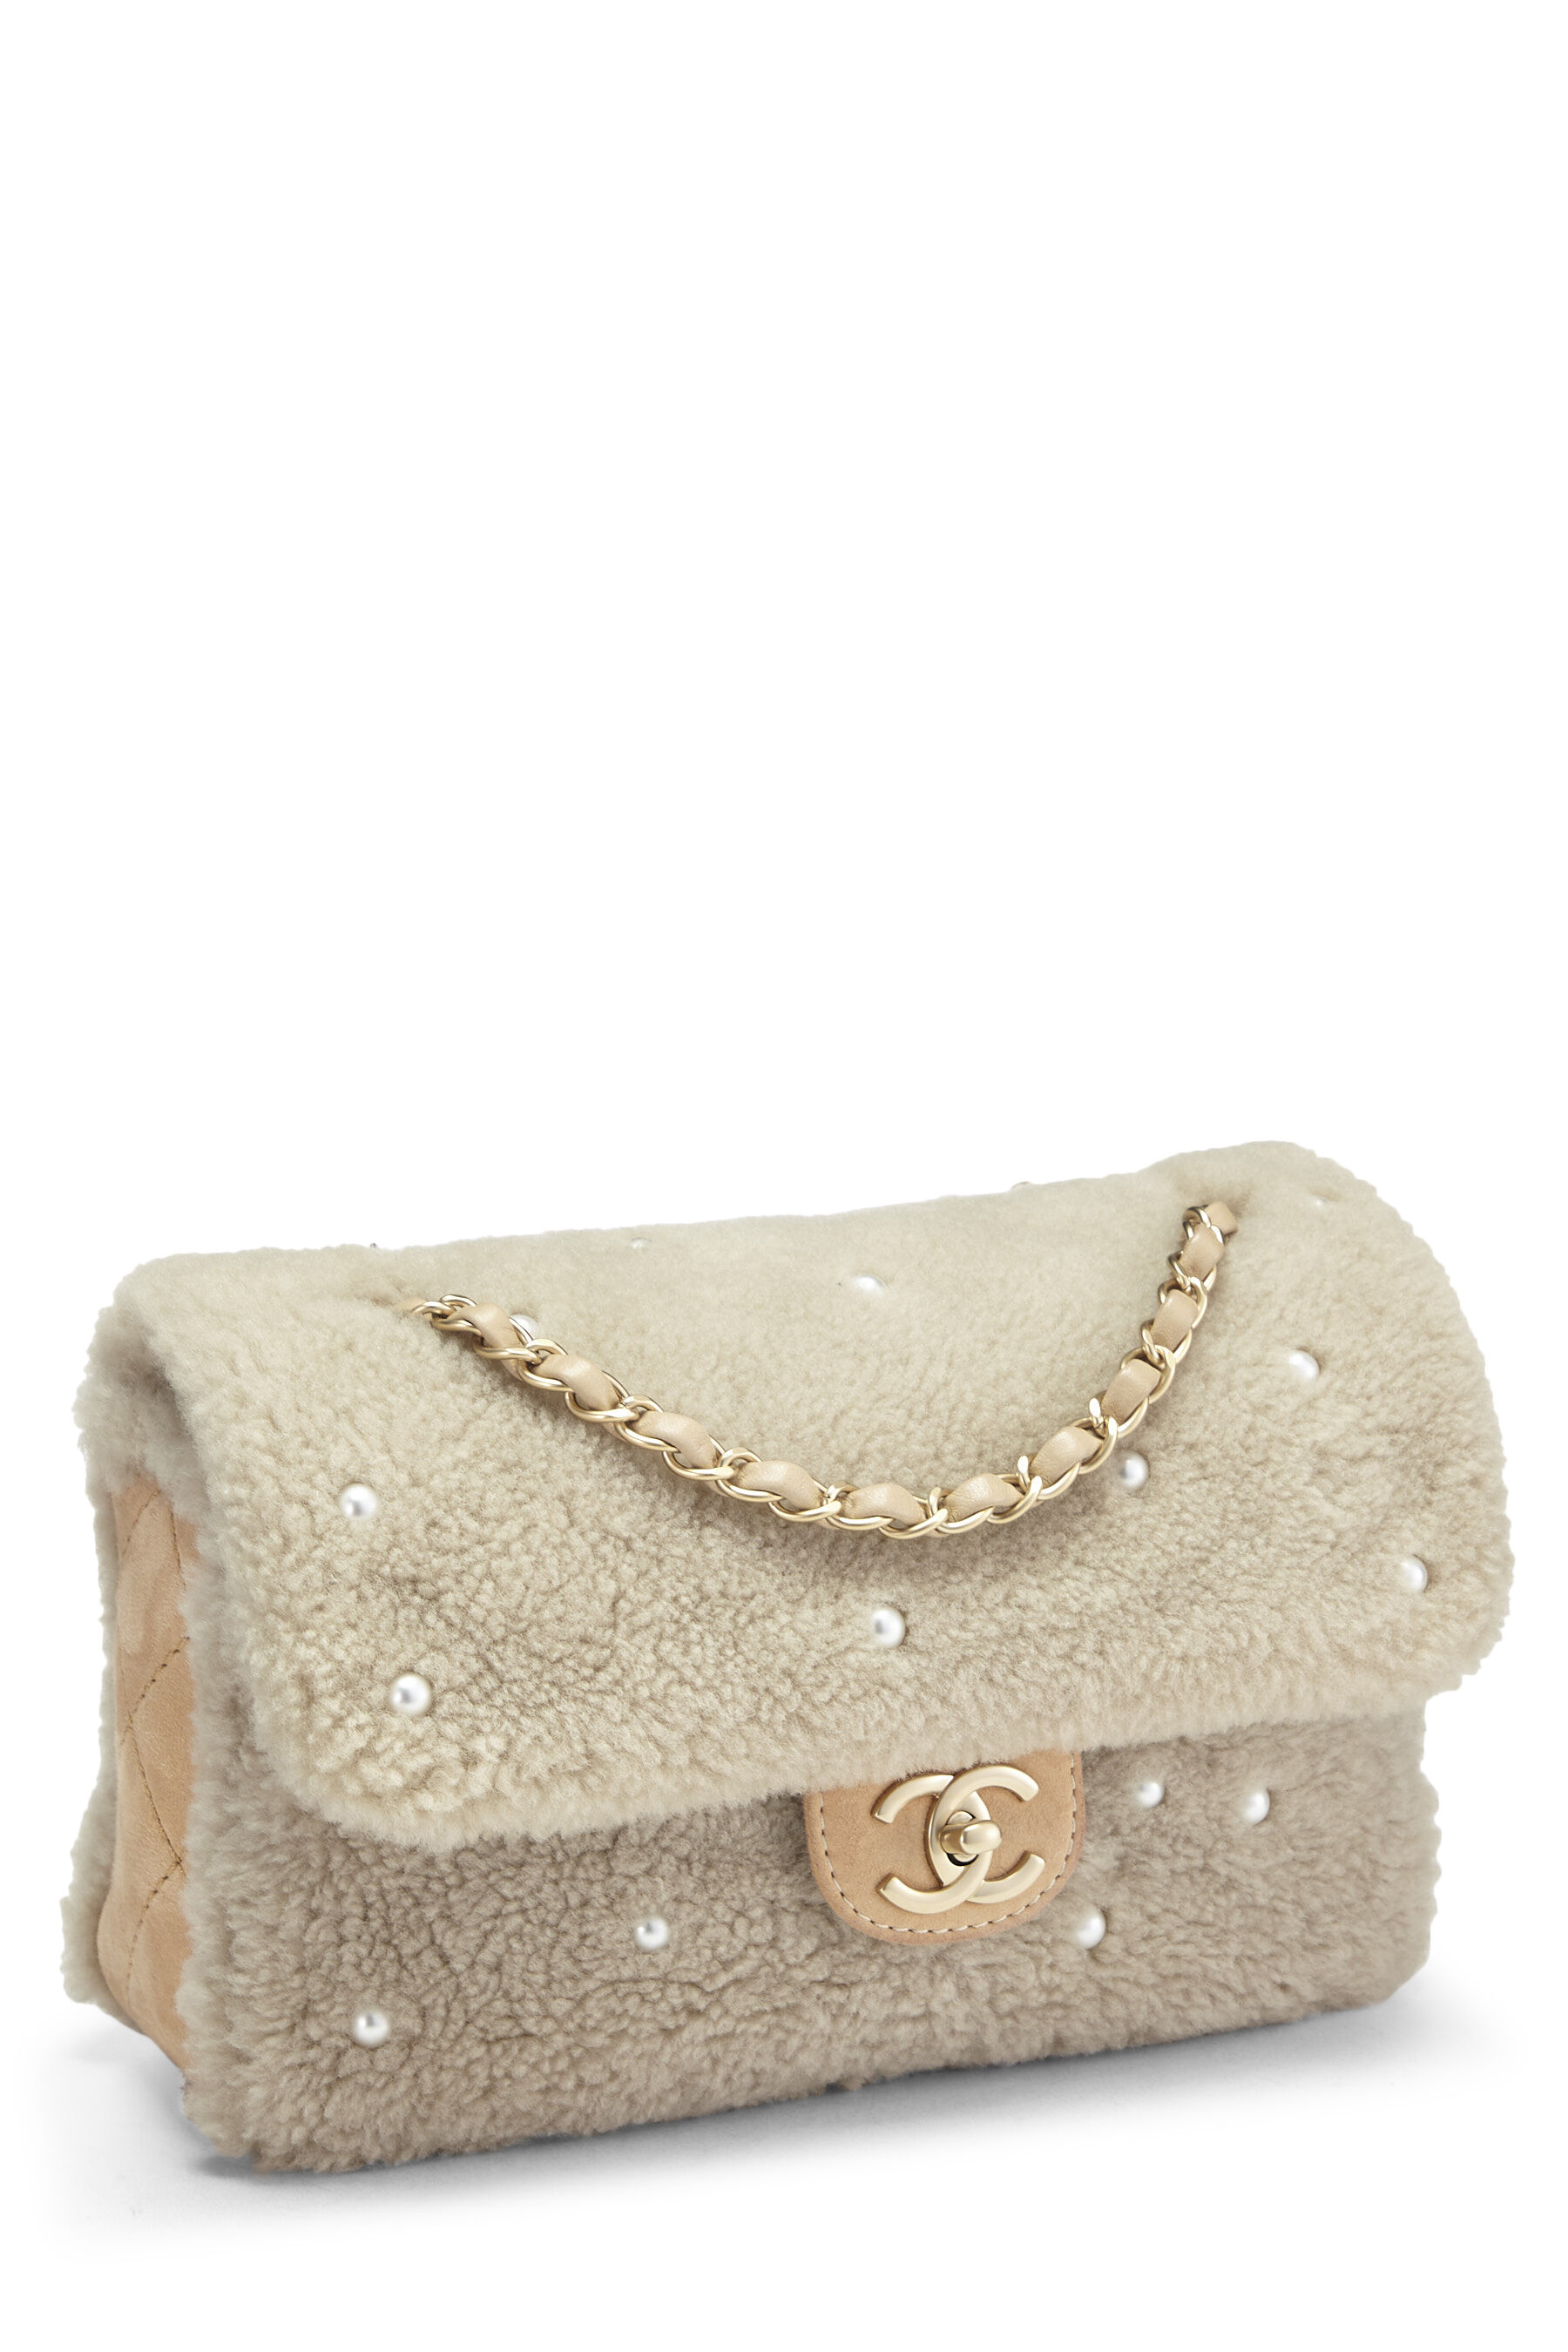 Chanel Shearling Pearl Flap Bag - Neutrals Shoulder Bags, Handbags -  CHA445114